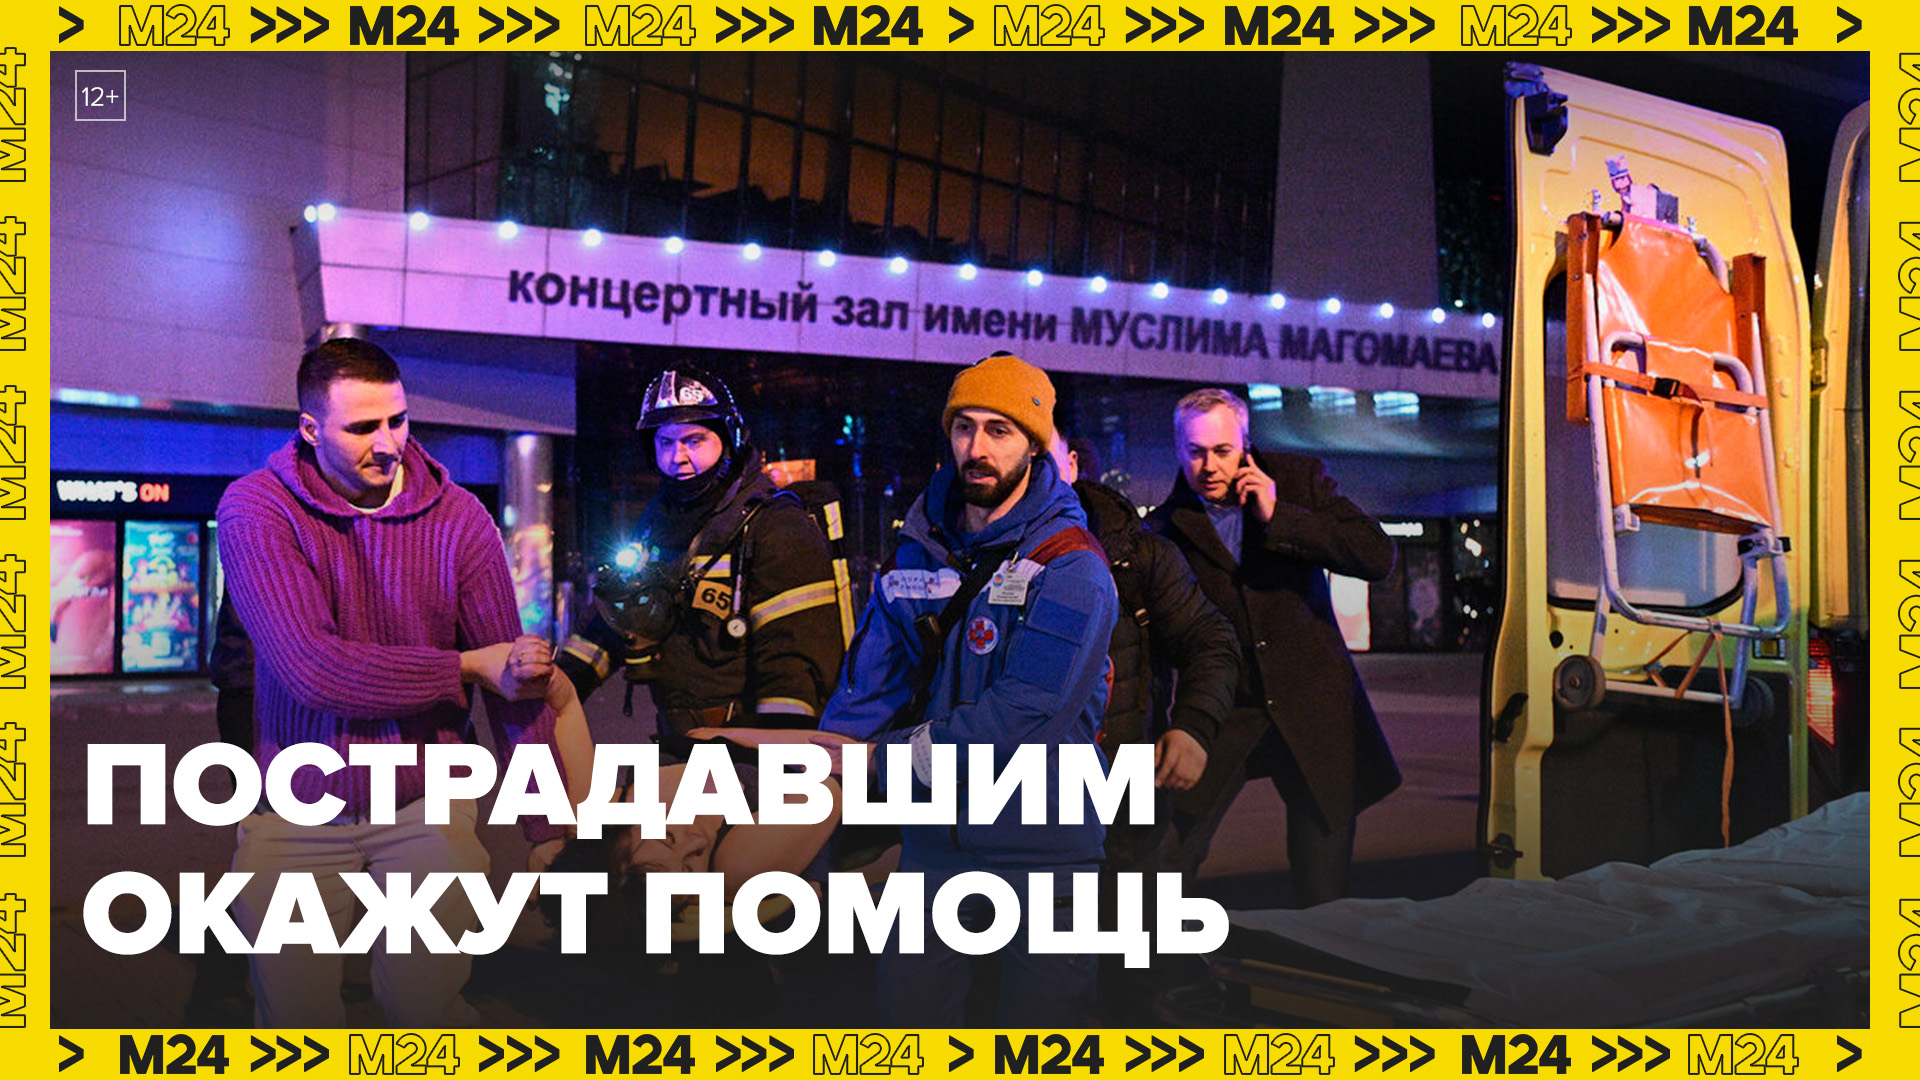 Собянин: московские власти окажут помощь пострадавшим в Крокус-Сити - Москва 24